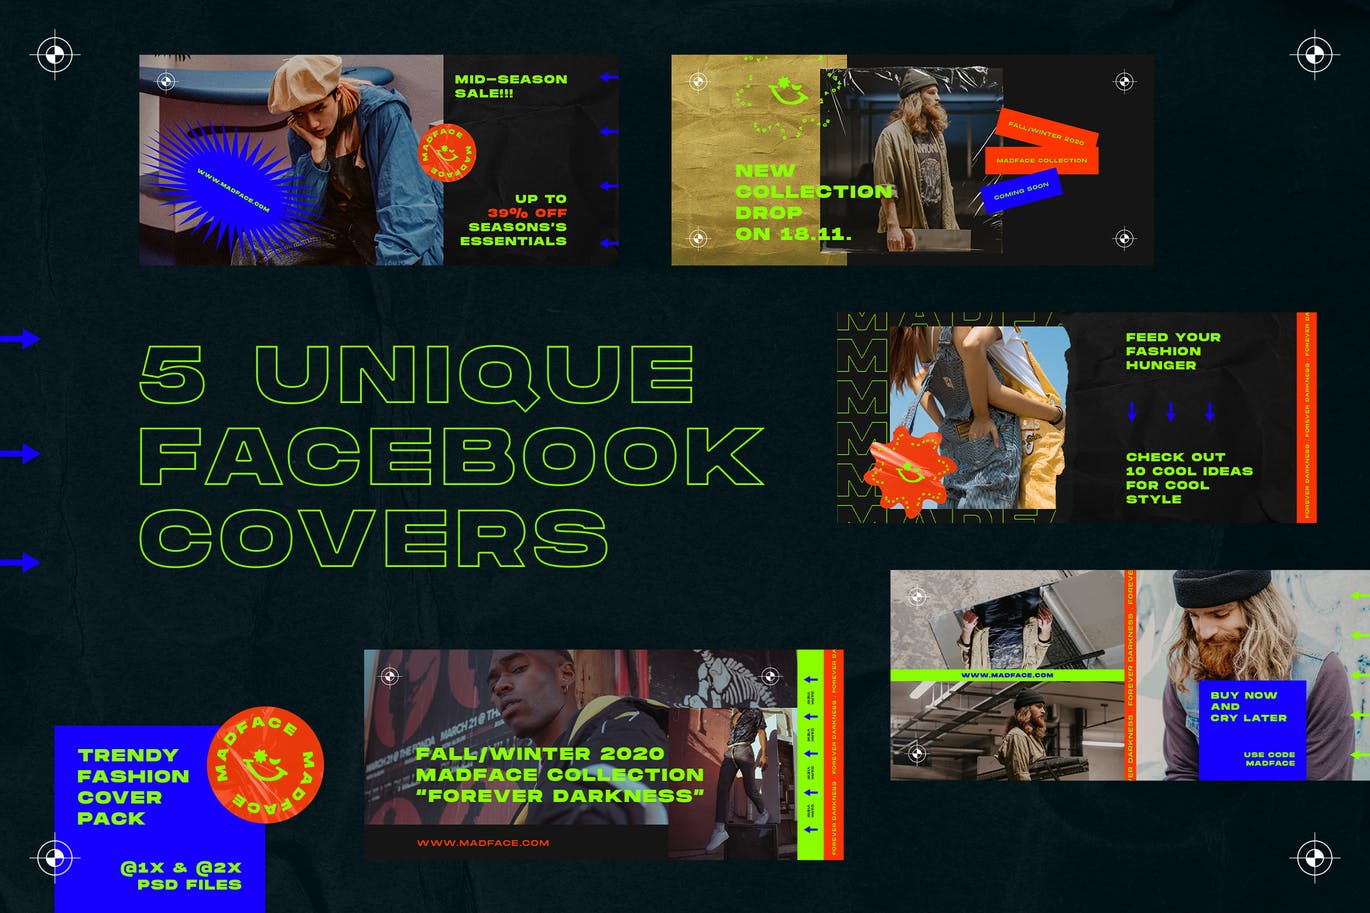 潮流时尚主题Facebook封面设计模板第一素材精选 Fashion Facebook Covers插图